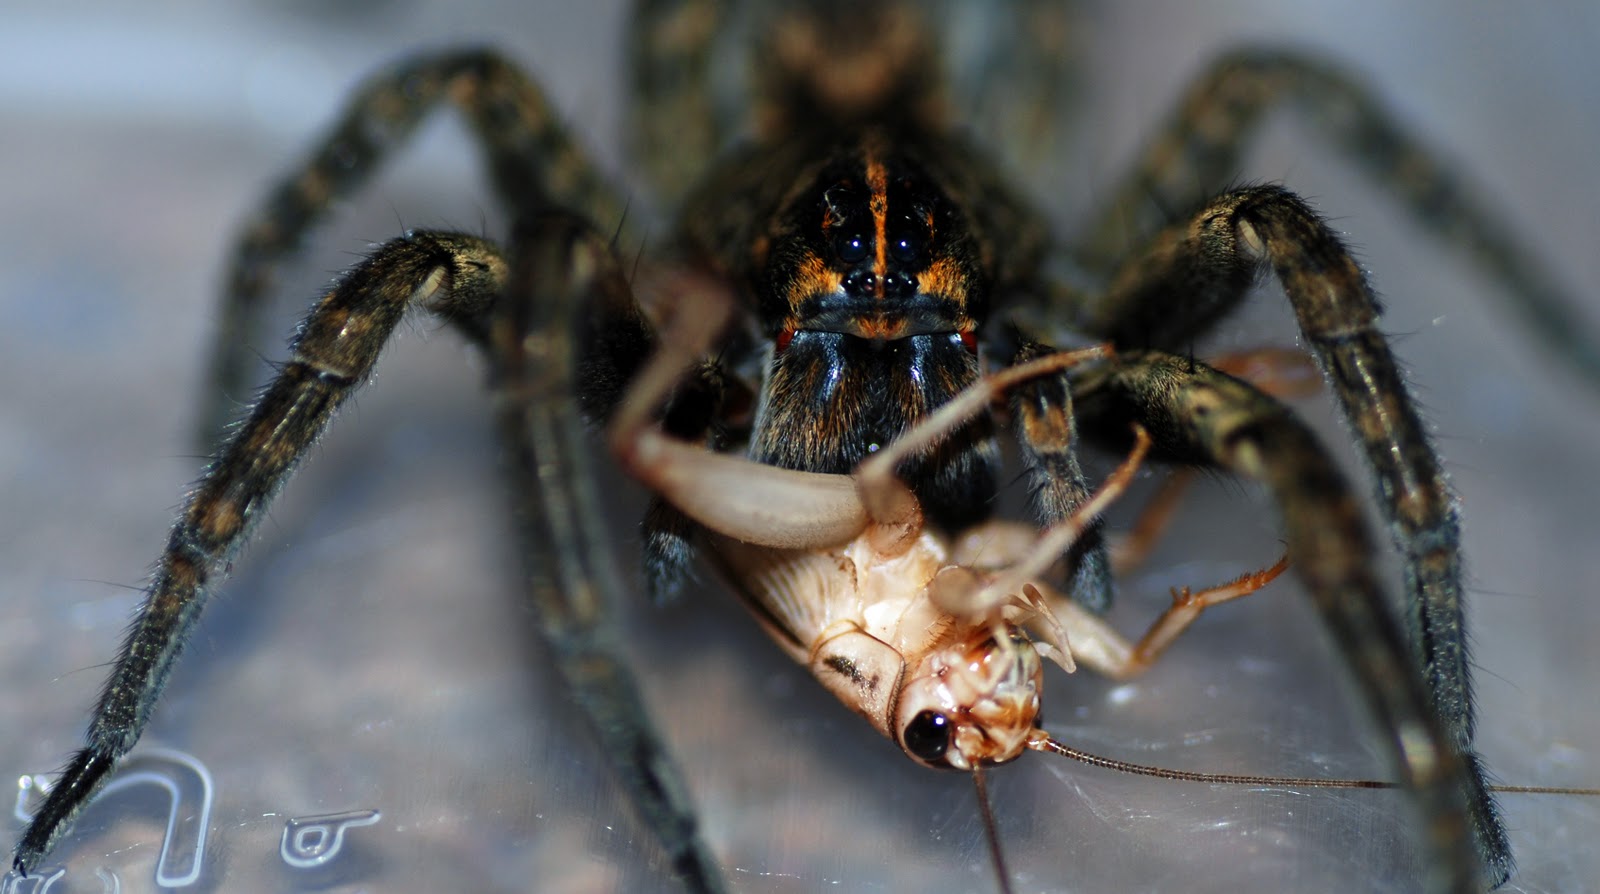 wolf-spider-eating-cricket.jpg